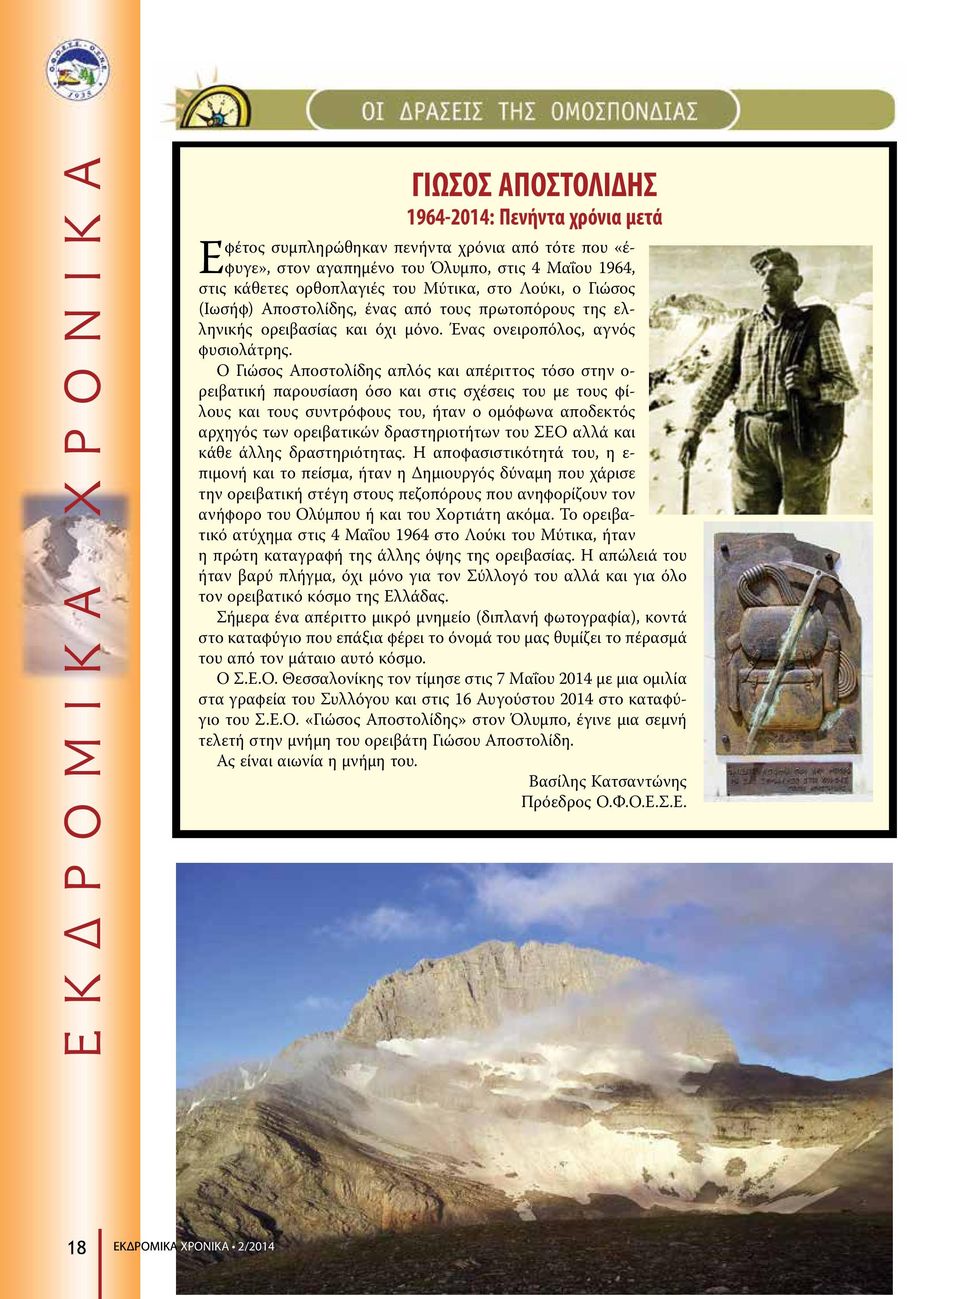 Ο Γιώσος Αποστολίδης απλός και απέριττος τόσο στην ο- ρειβατική παρουσίαση όσο και στις σχέσεις του με τους φίλους και τους συντρόφους του, ήταν ο ομόφωνα αποδεκτός αρχηγός των ορειβατικών